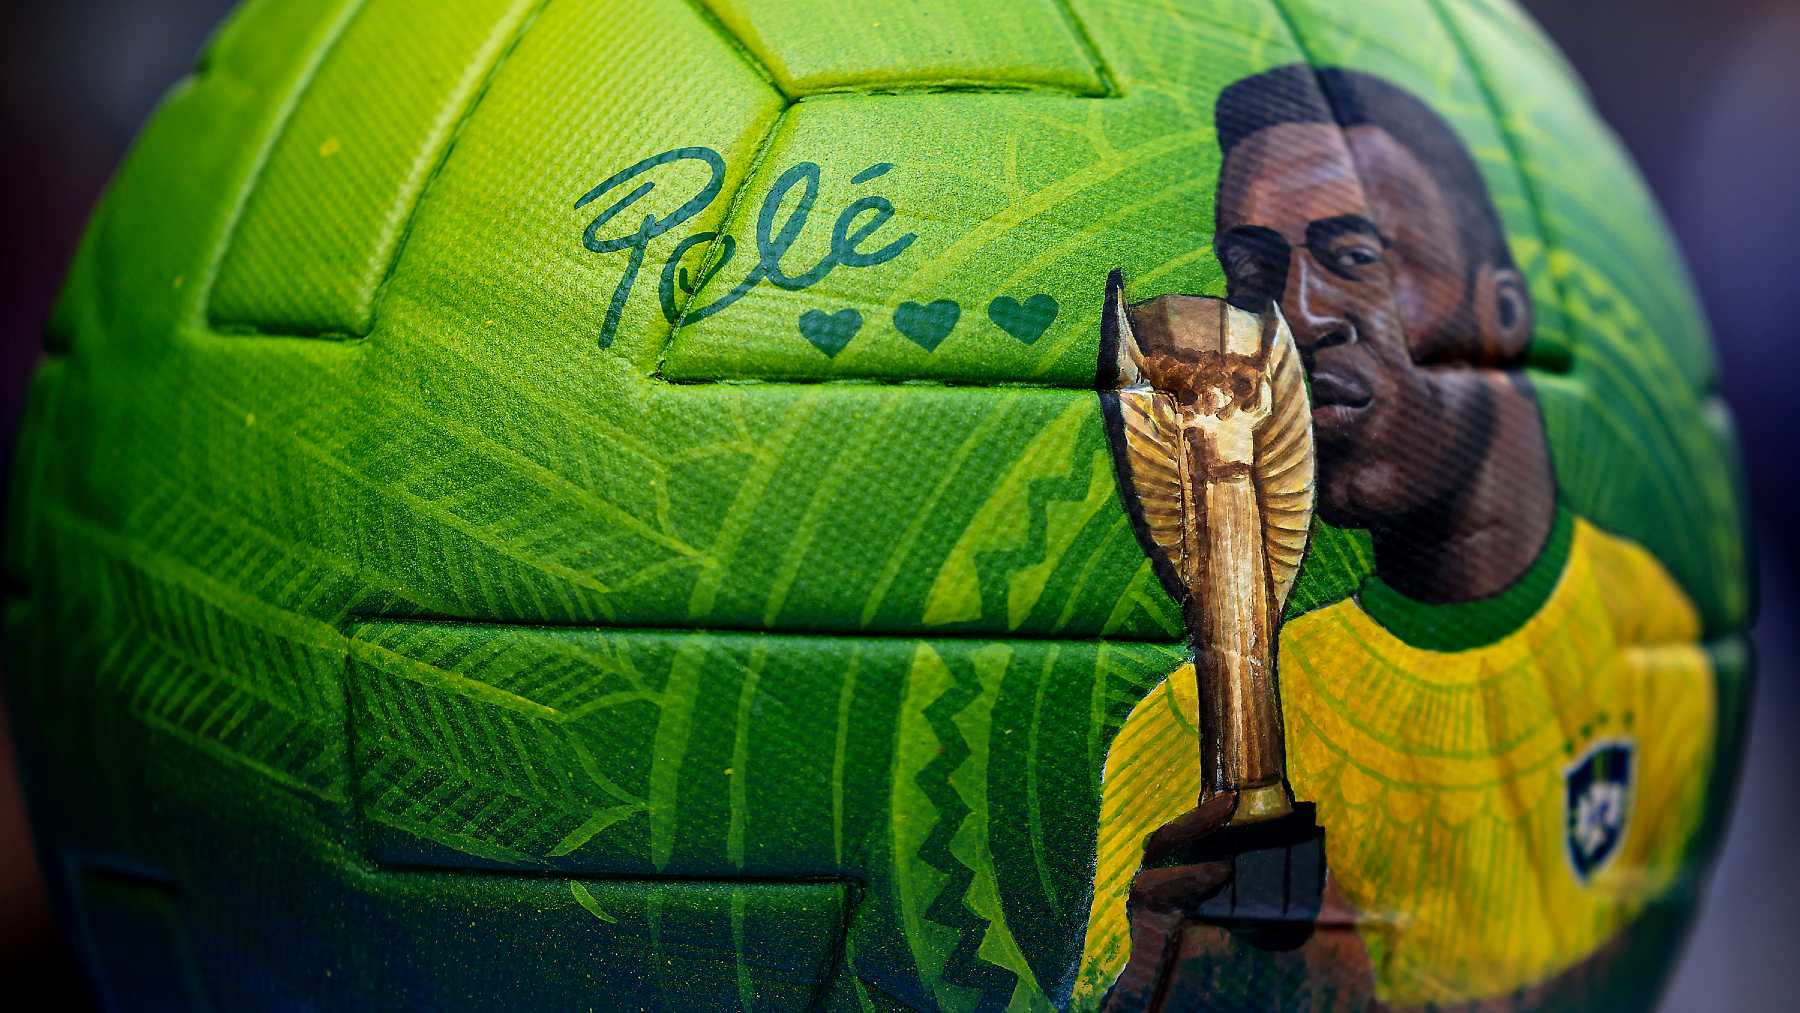 La imagen de Pelé, serigrafiada en un balón. (Getty)